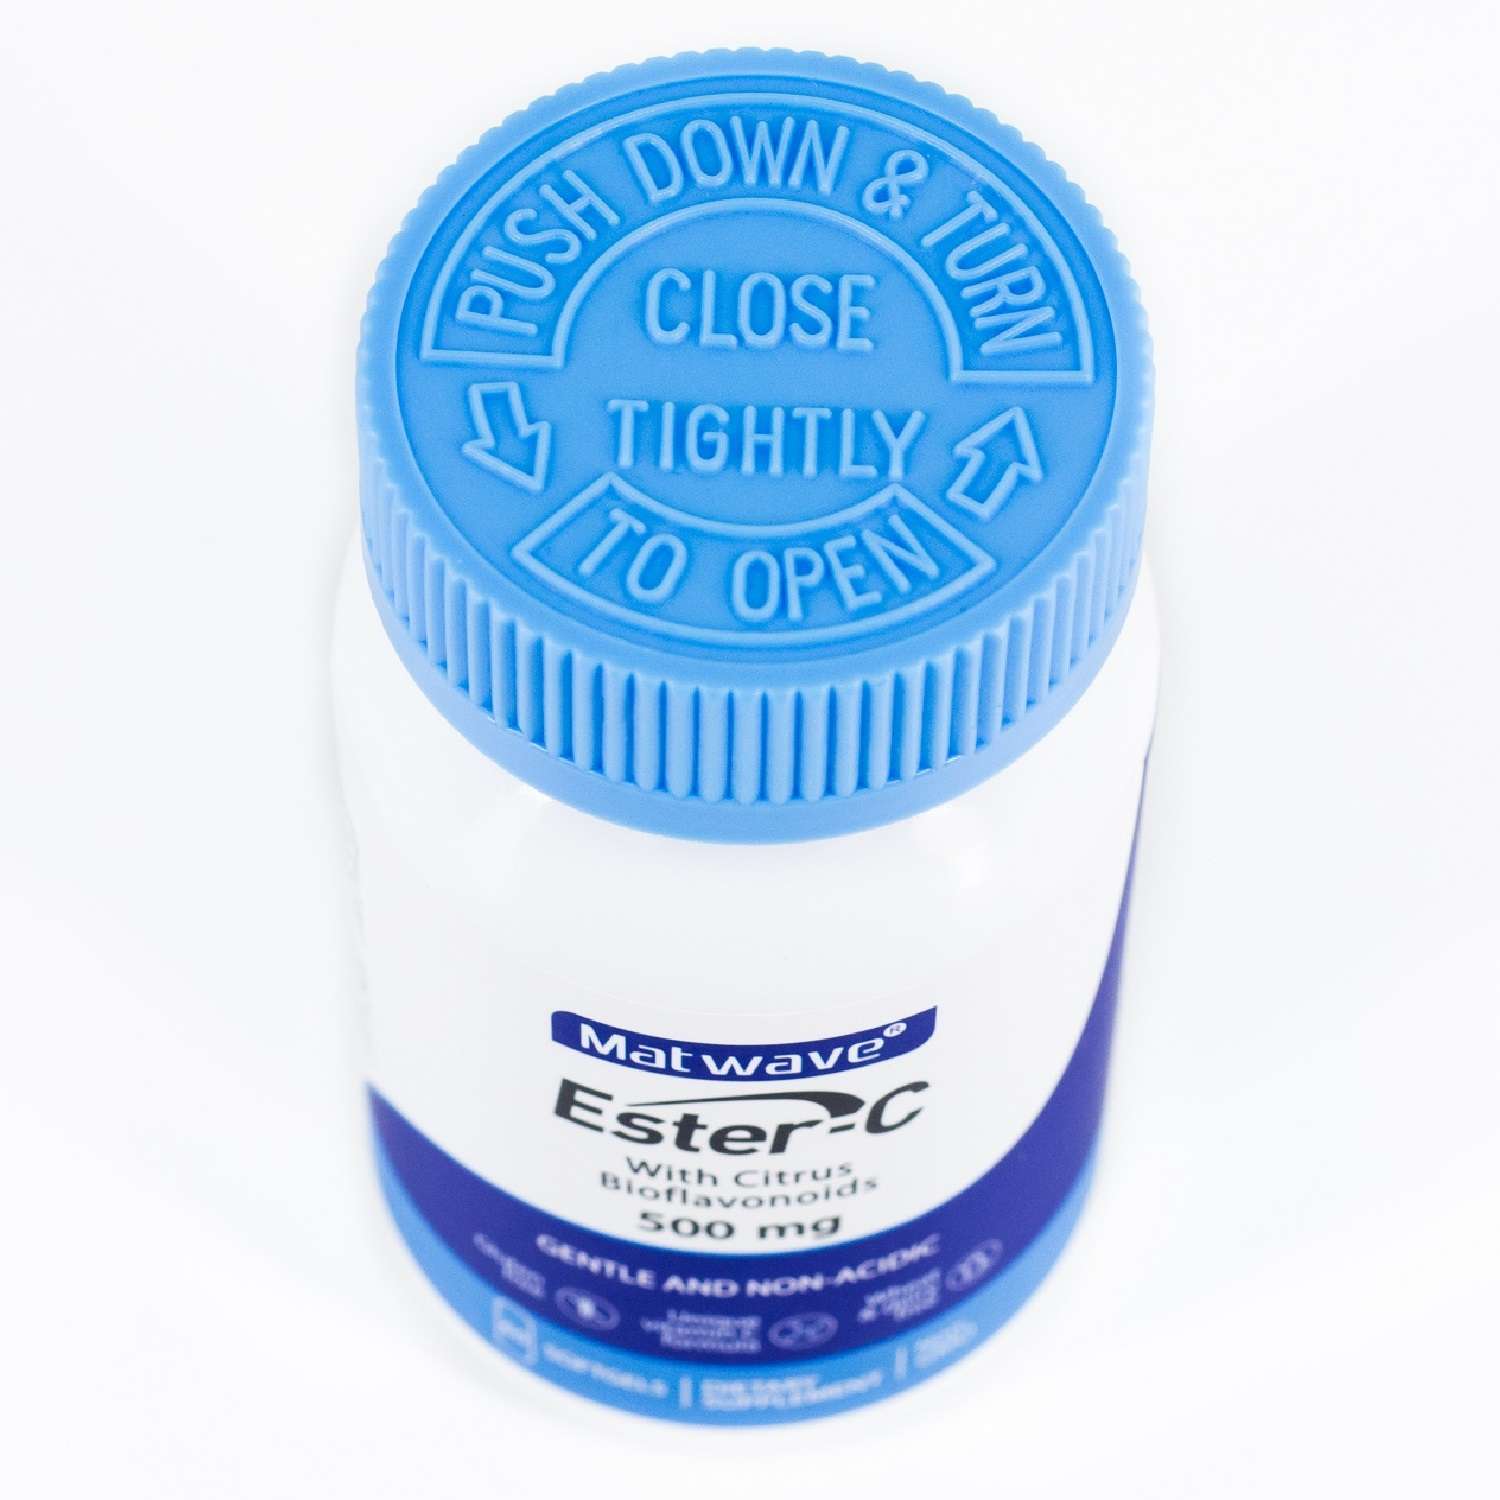 Витамин С Matwave Ester-C Эстер С 500 mg 60 капсул комплект 3 упаковки - фото 8